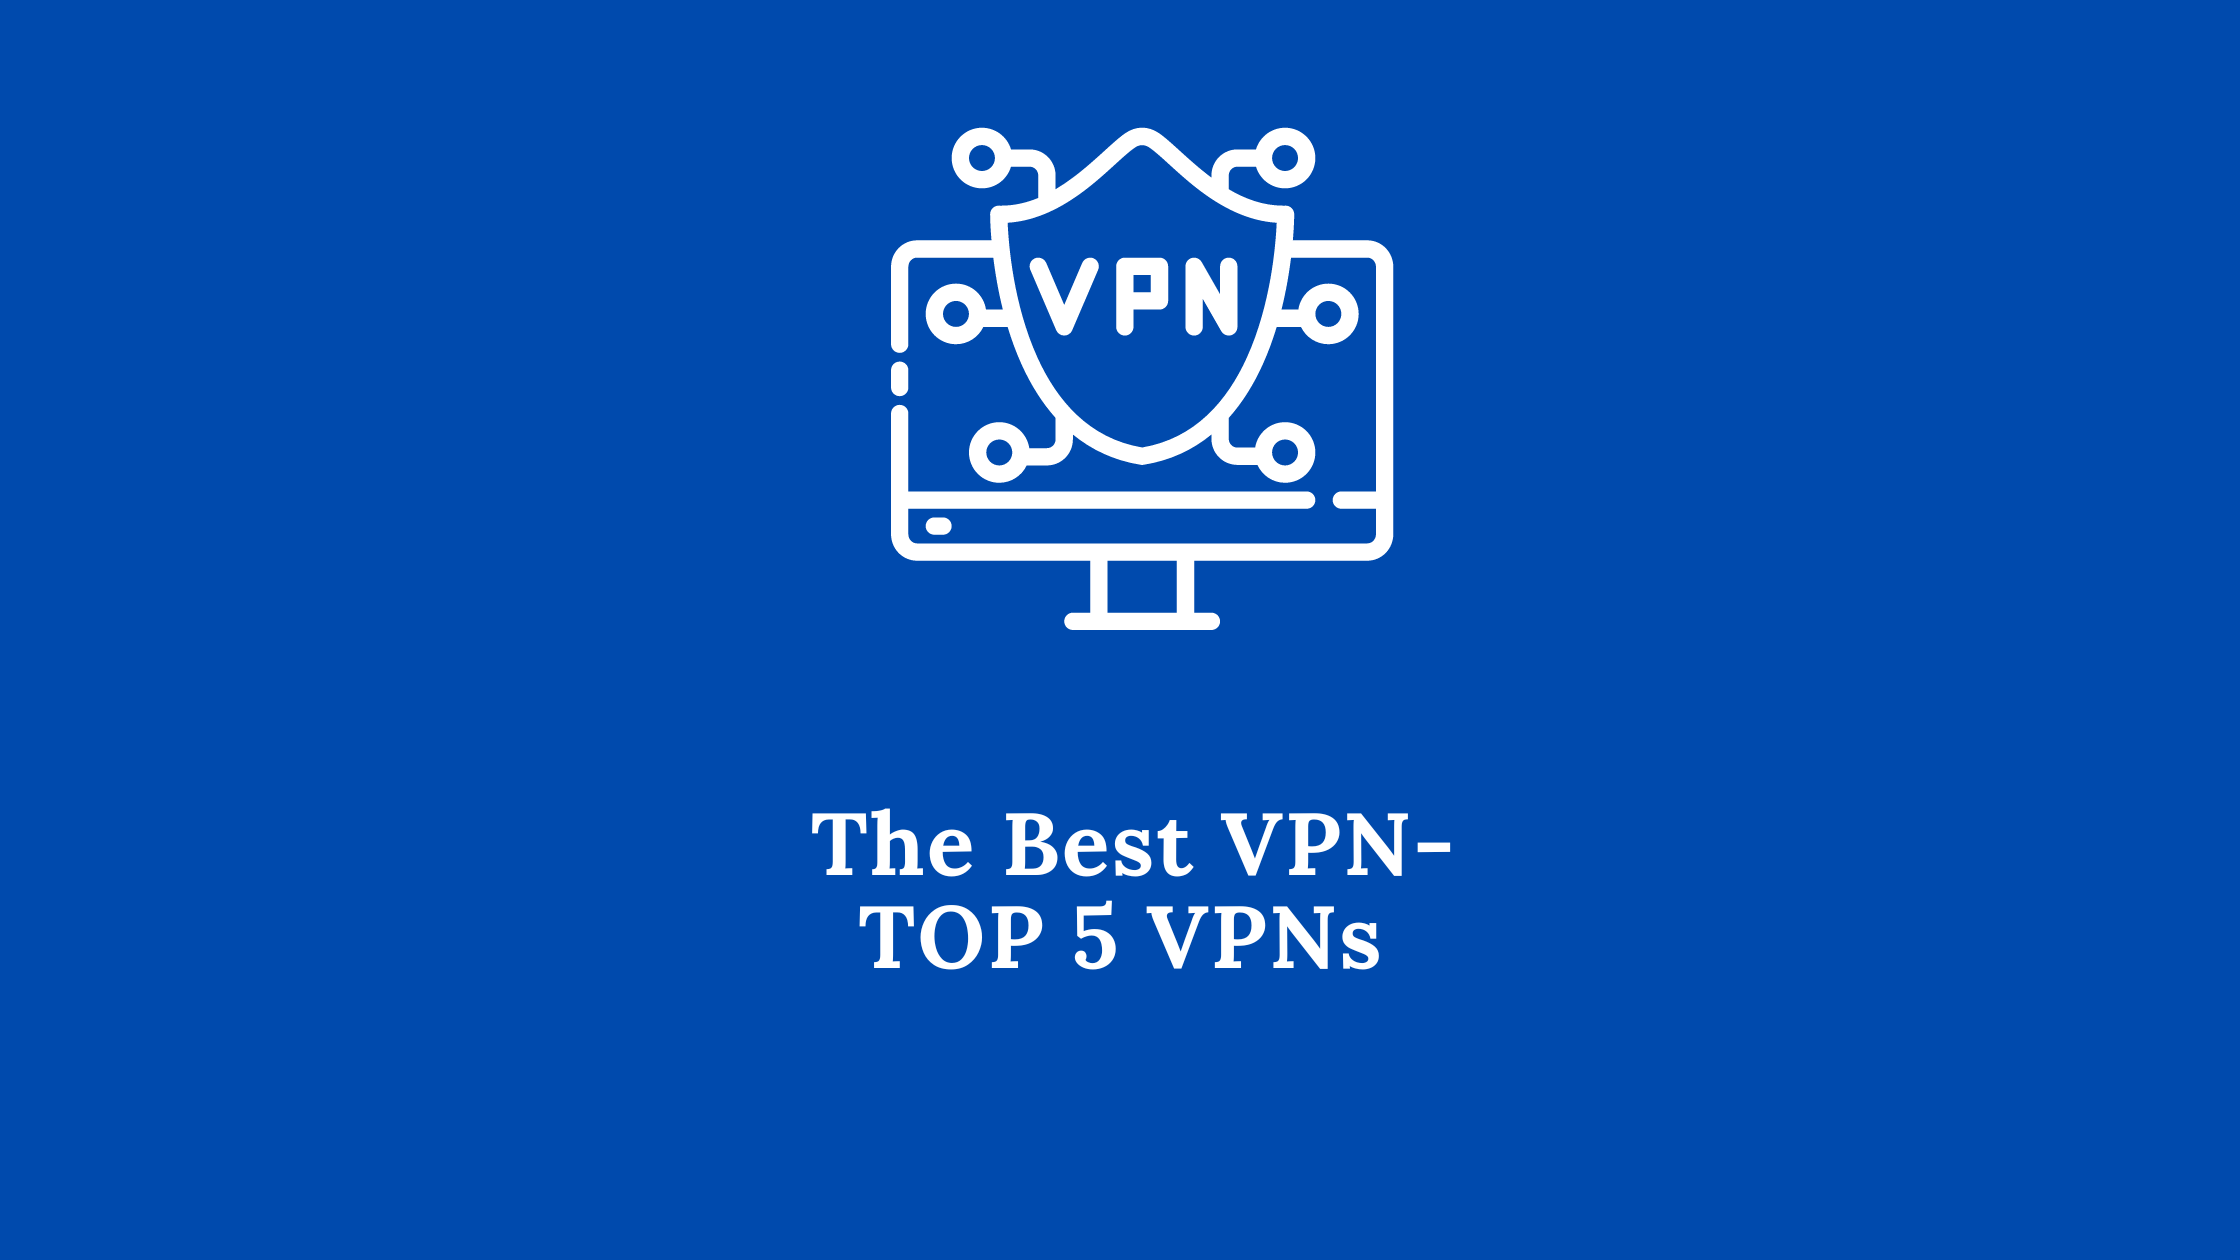 Top 5 VPNs